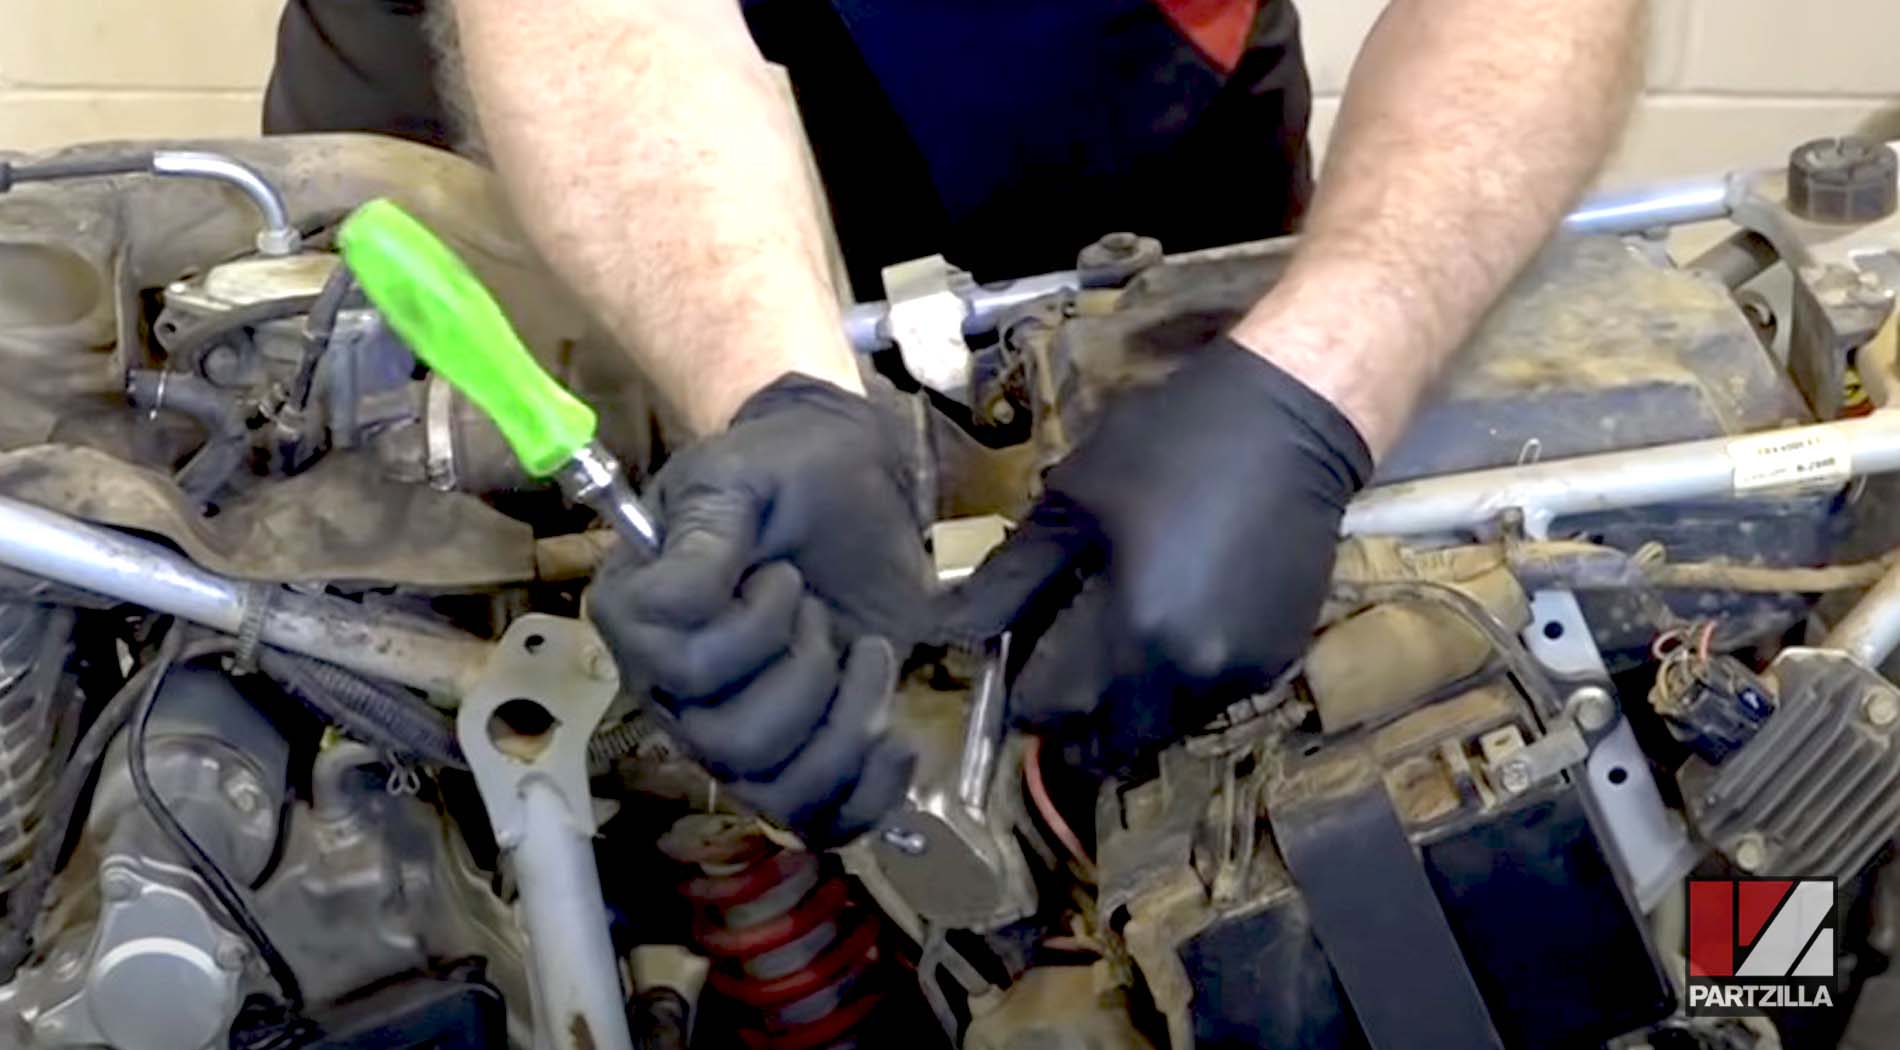 Honda TRX400 carburetor clean and rebuild